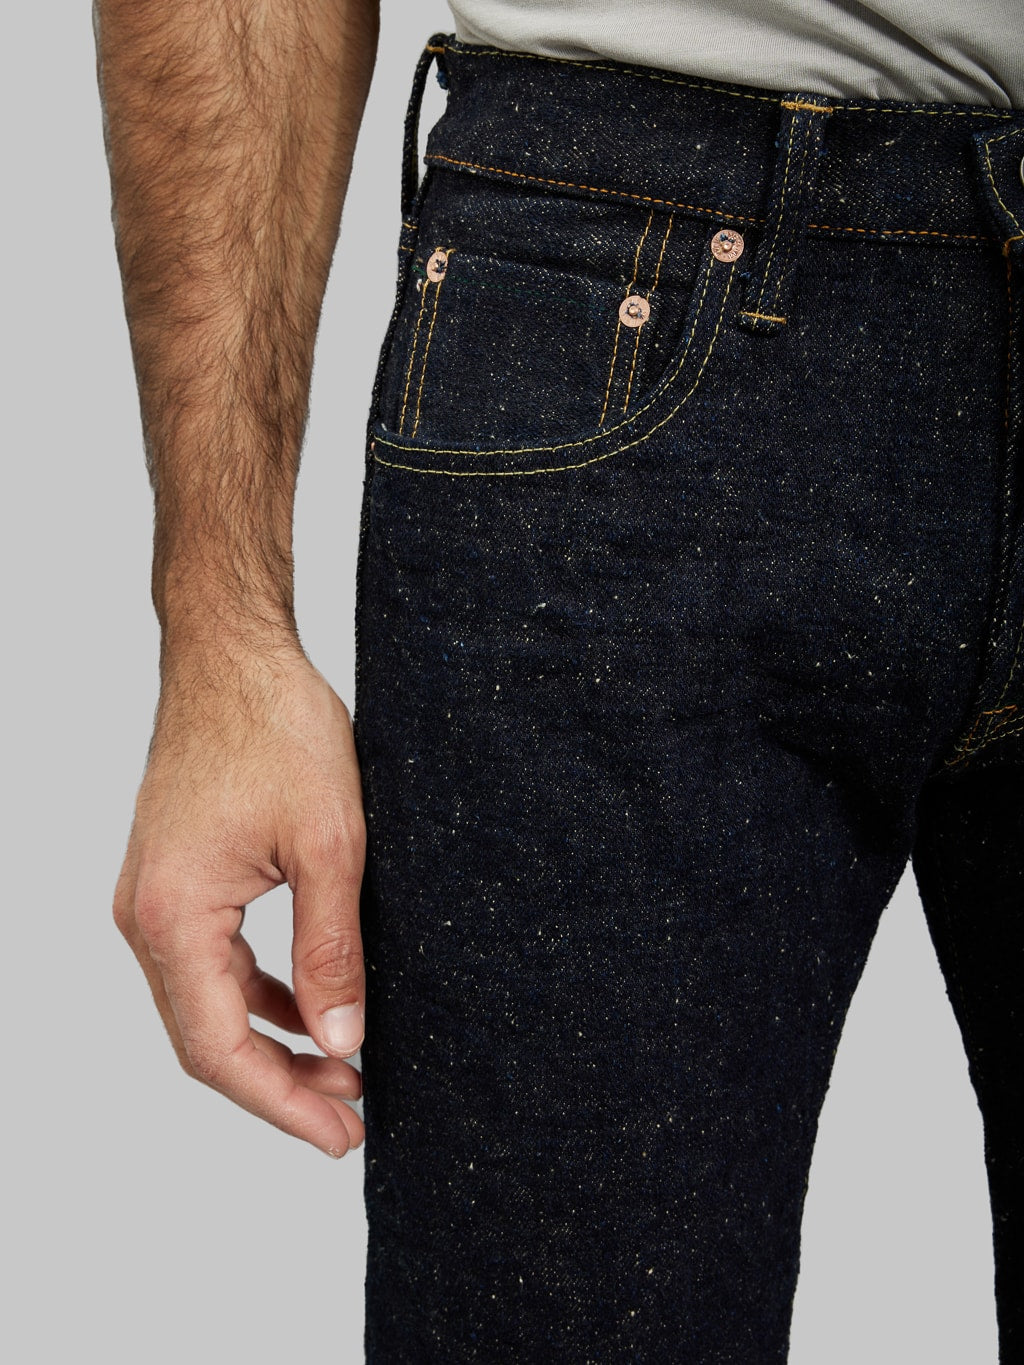 ONI Denim 544 Asphalt 20oz Stylish Tapered Jeans  front pocket